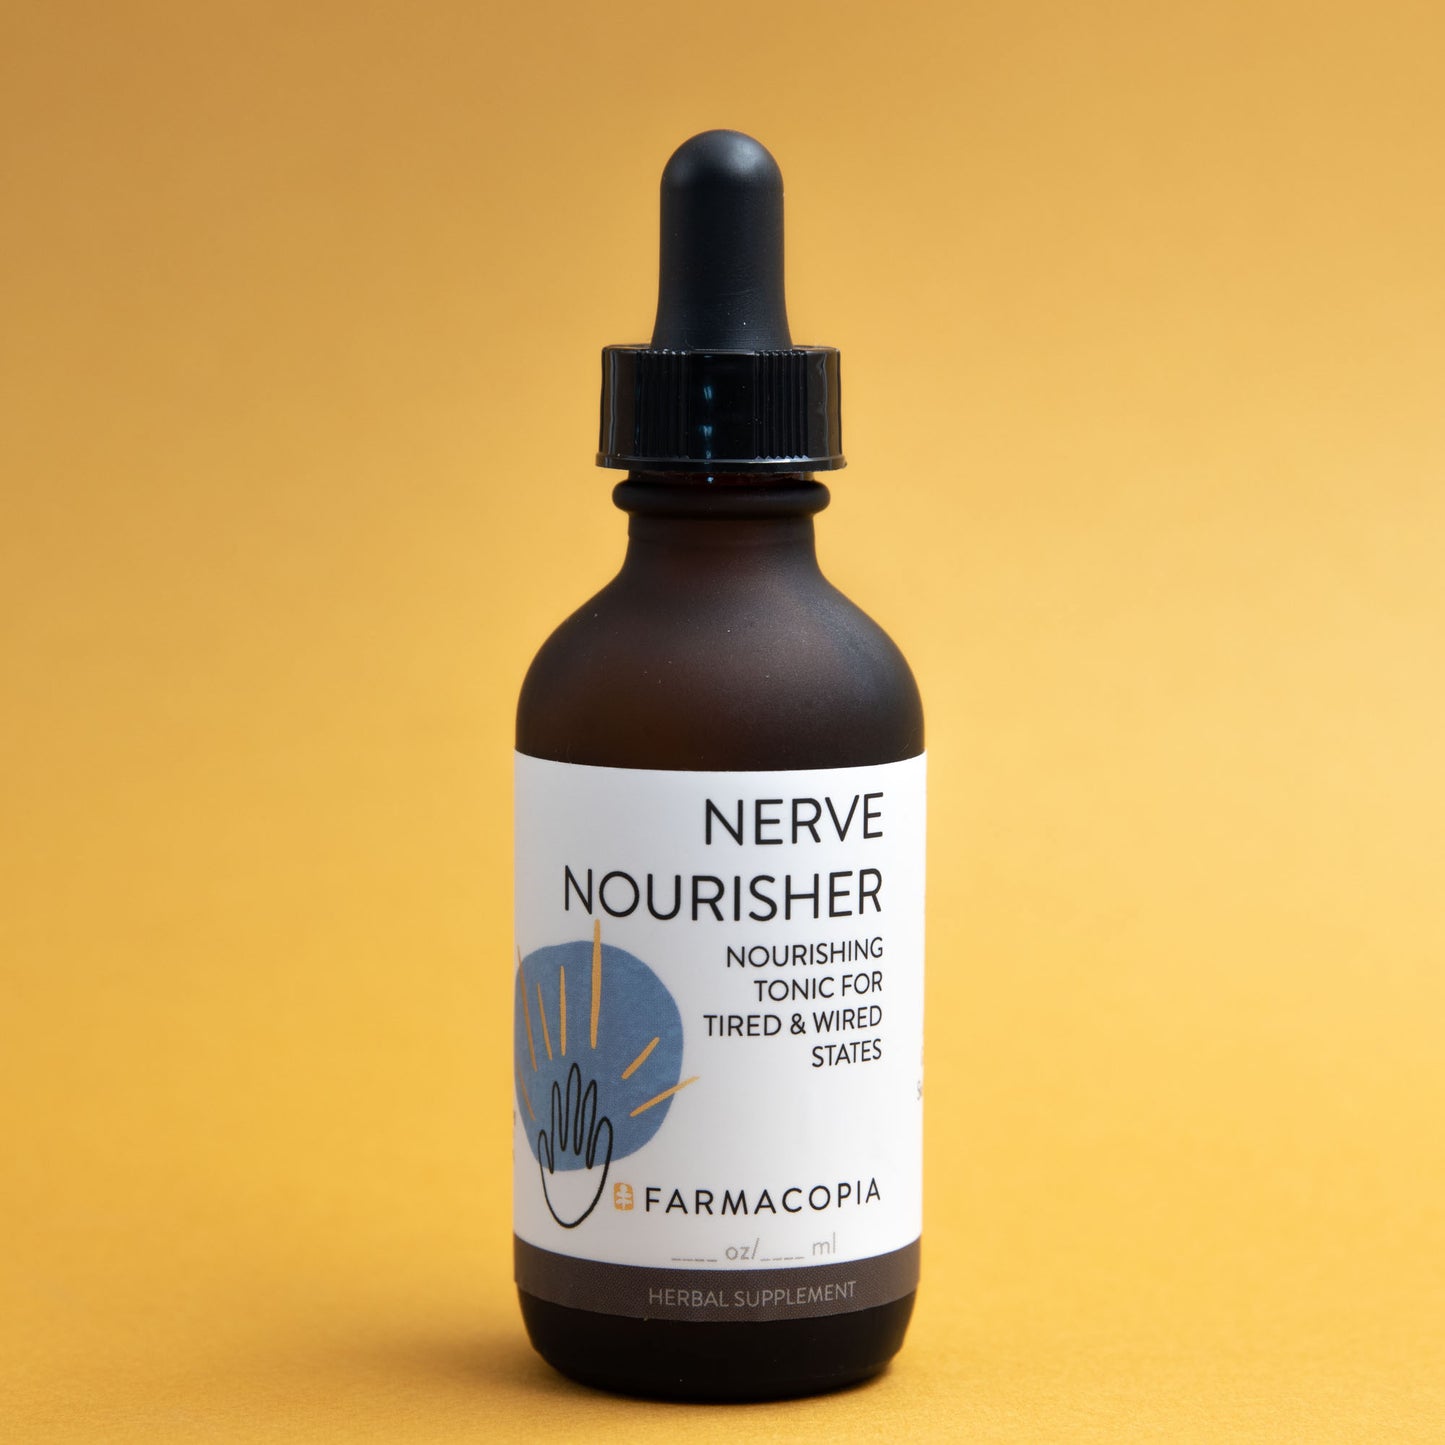 Nerve Nourisher